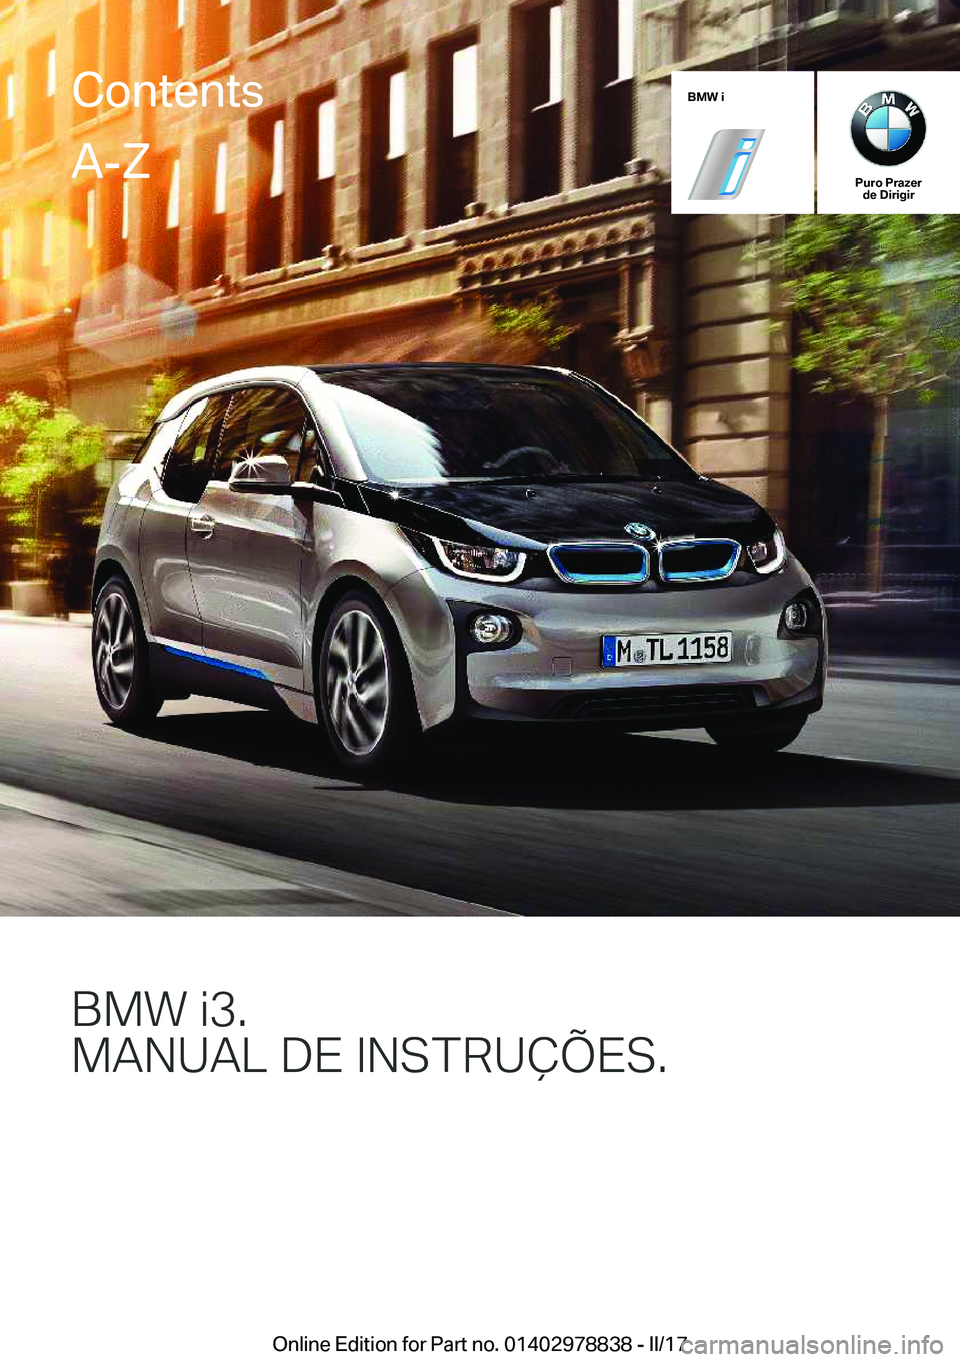 BMW I3 2017  Manual do condutor (in Portuguese) �B�M�W��i
�P�u�r�o��P�r�a�z�e�r�d�e��D�i�r�i�g�i�r
�B�M�8��J��
�M�A�N�U�A�L��D�E��*�N�S�T�R�U�